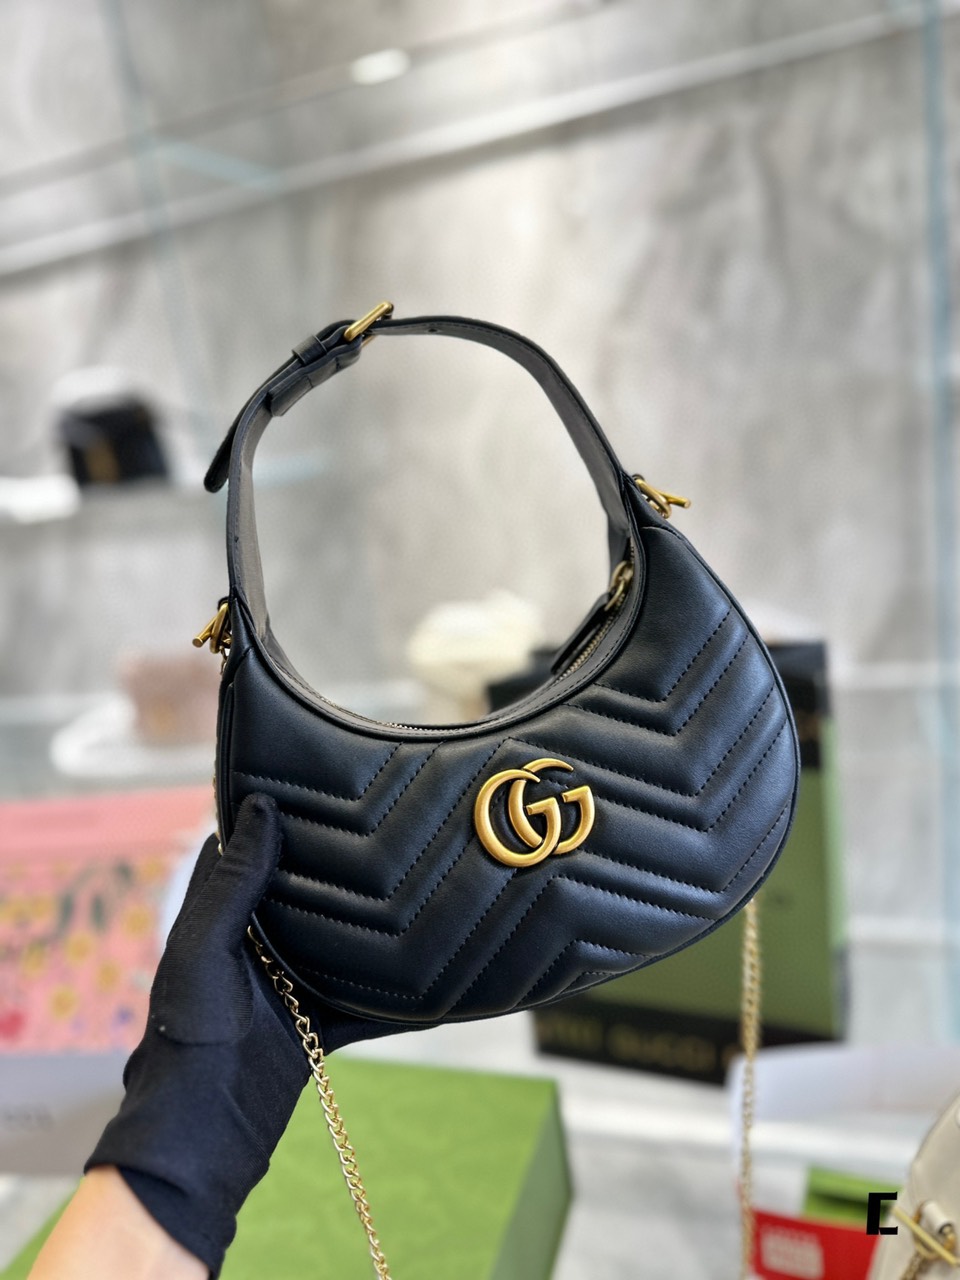 Tổng Hợp Túi Xách Gucci Super GG Marmont Half-Moon-Shaped Size  21.5 cm x 11 cm x 5 cm